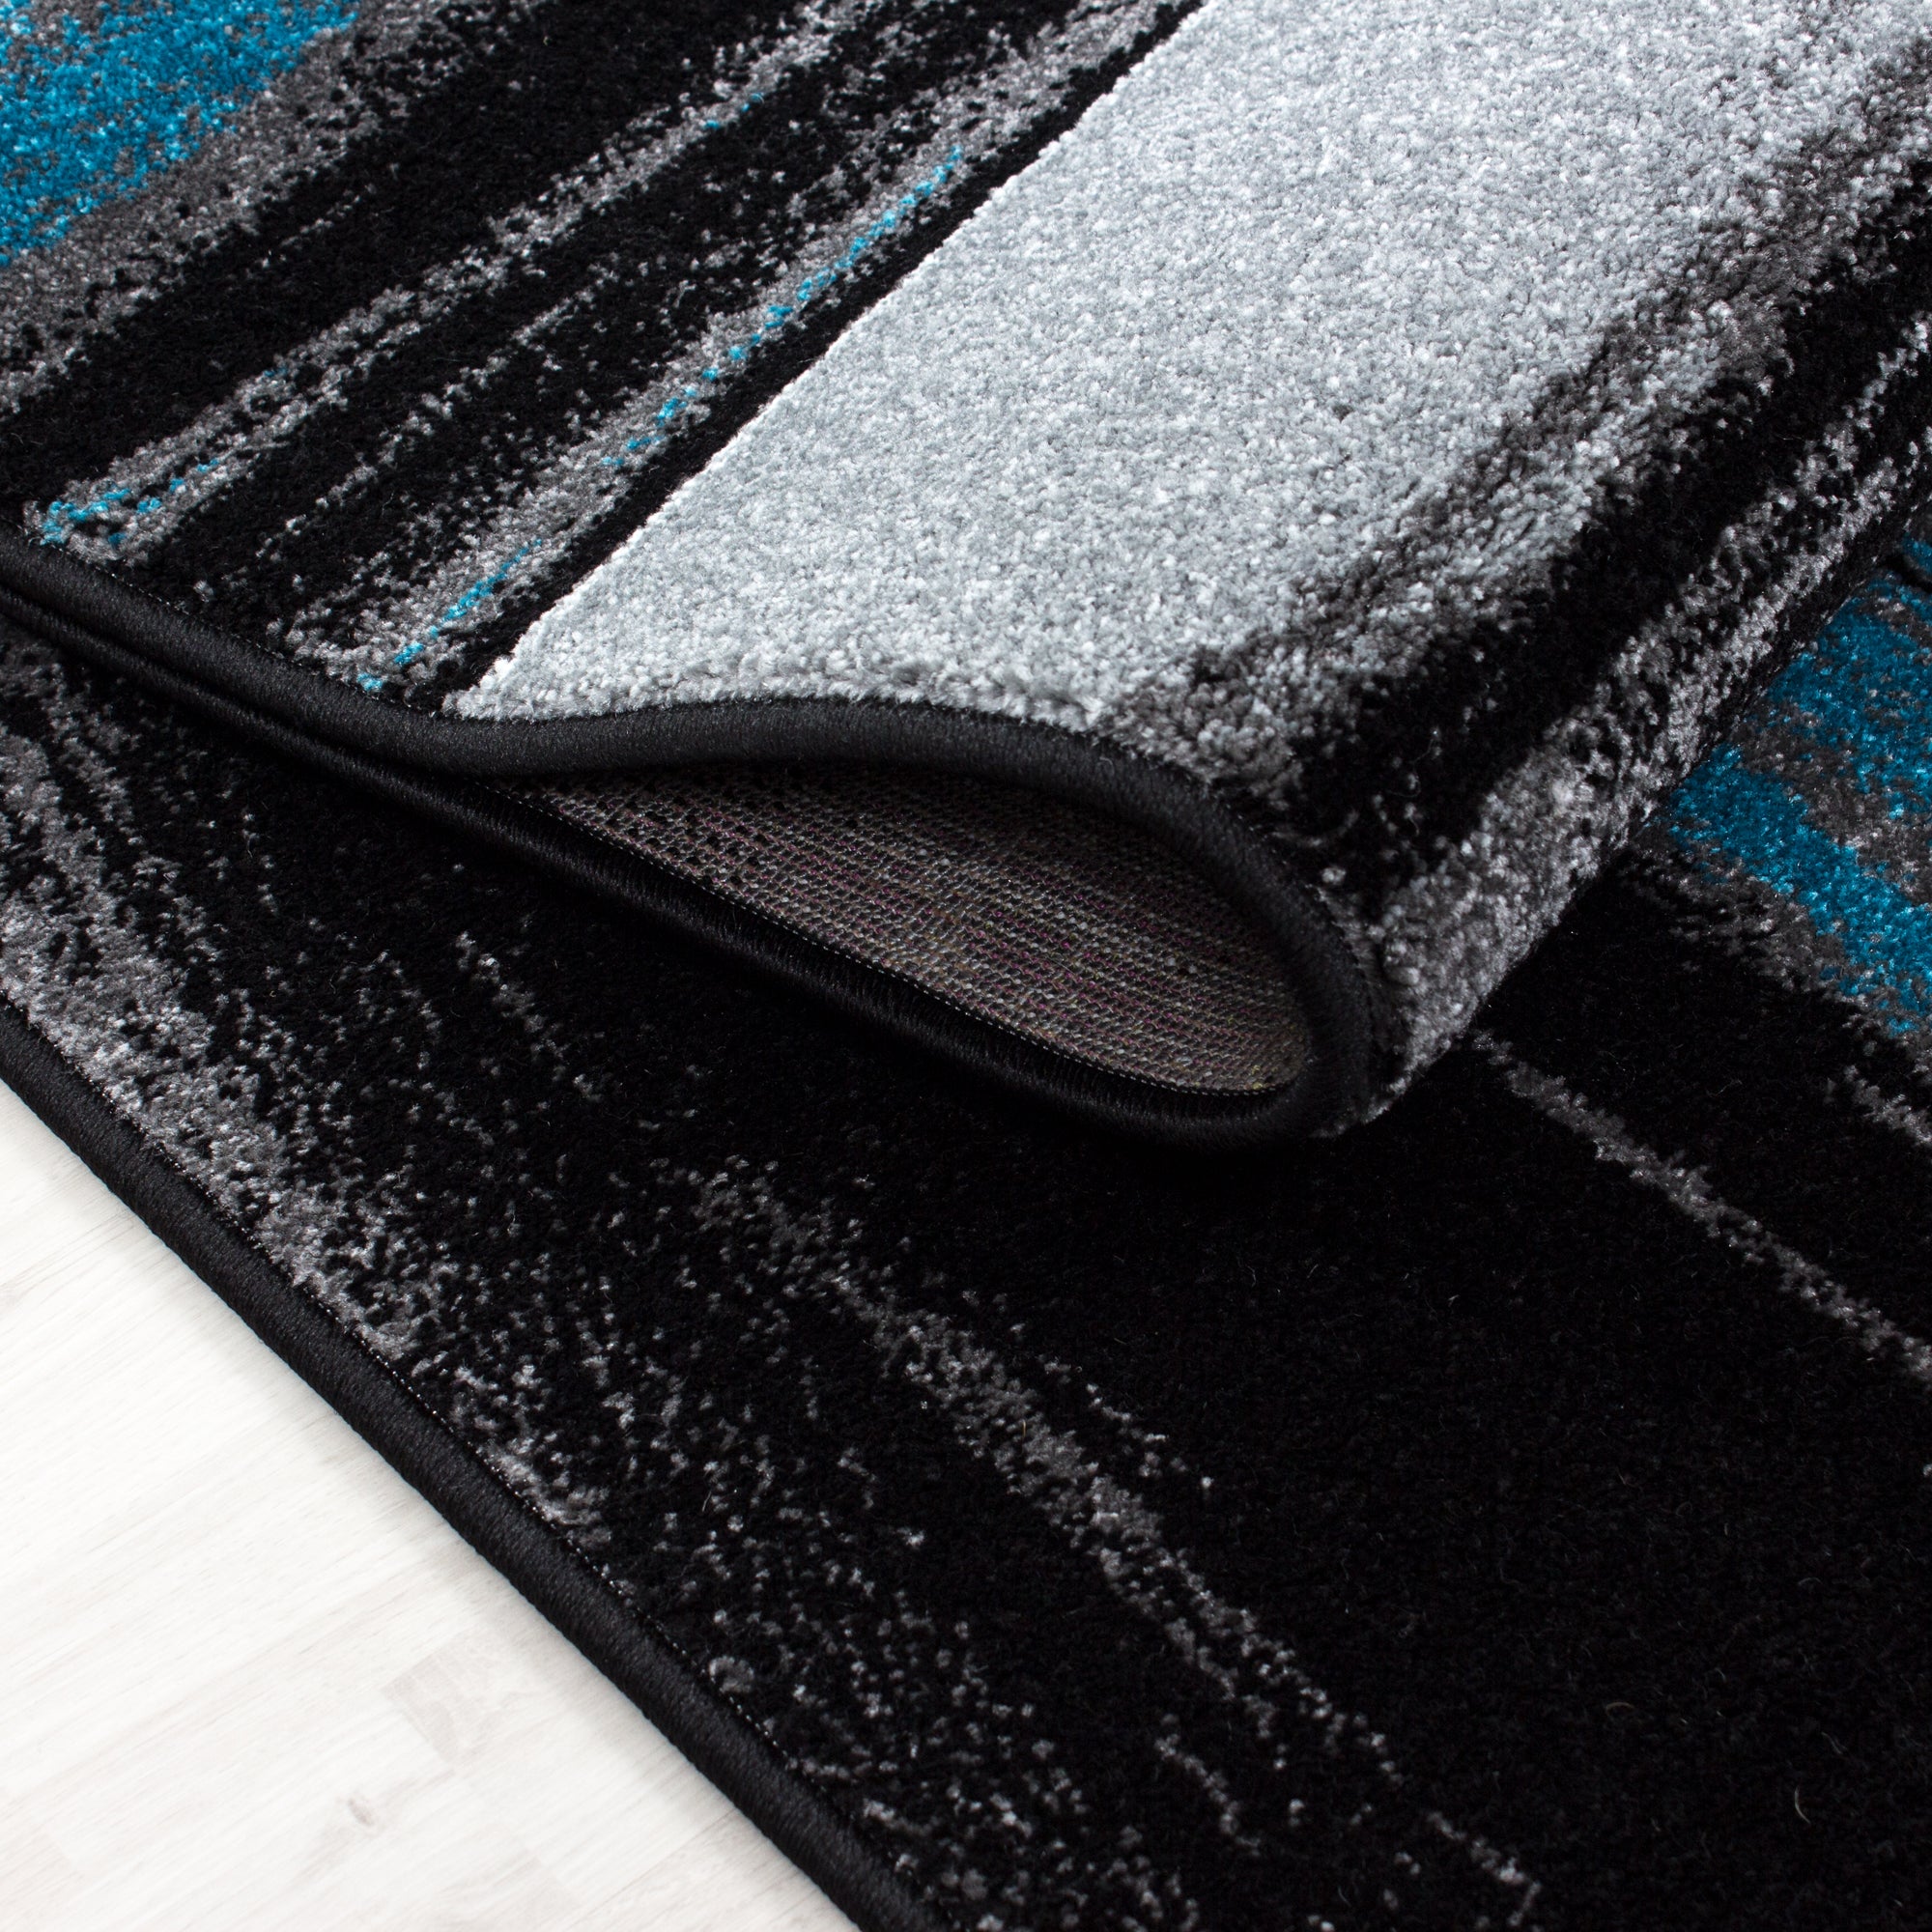 Set de tapis à poils ras 3 pièces bordure de lit gris noir turquoise chiné